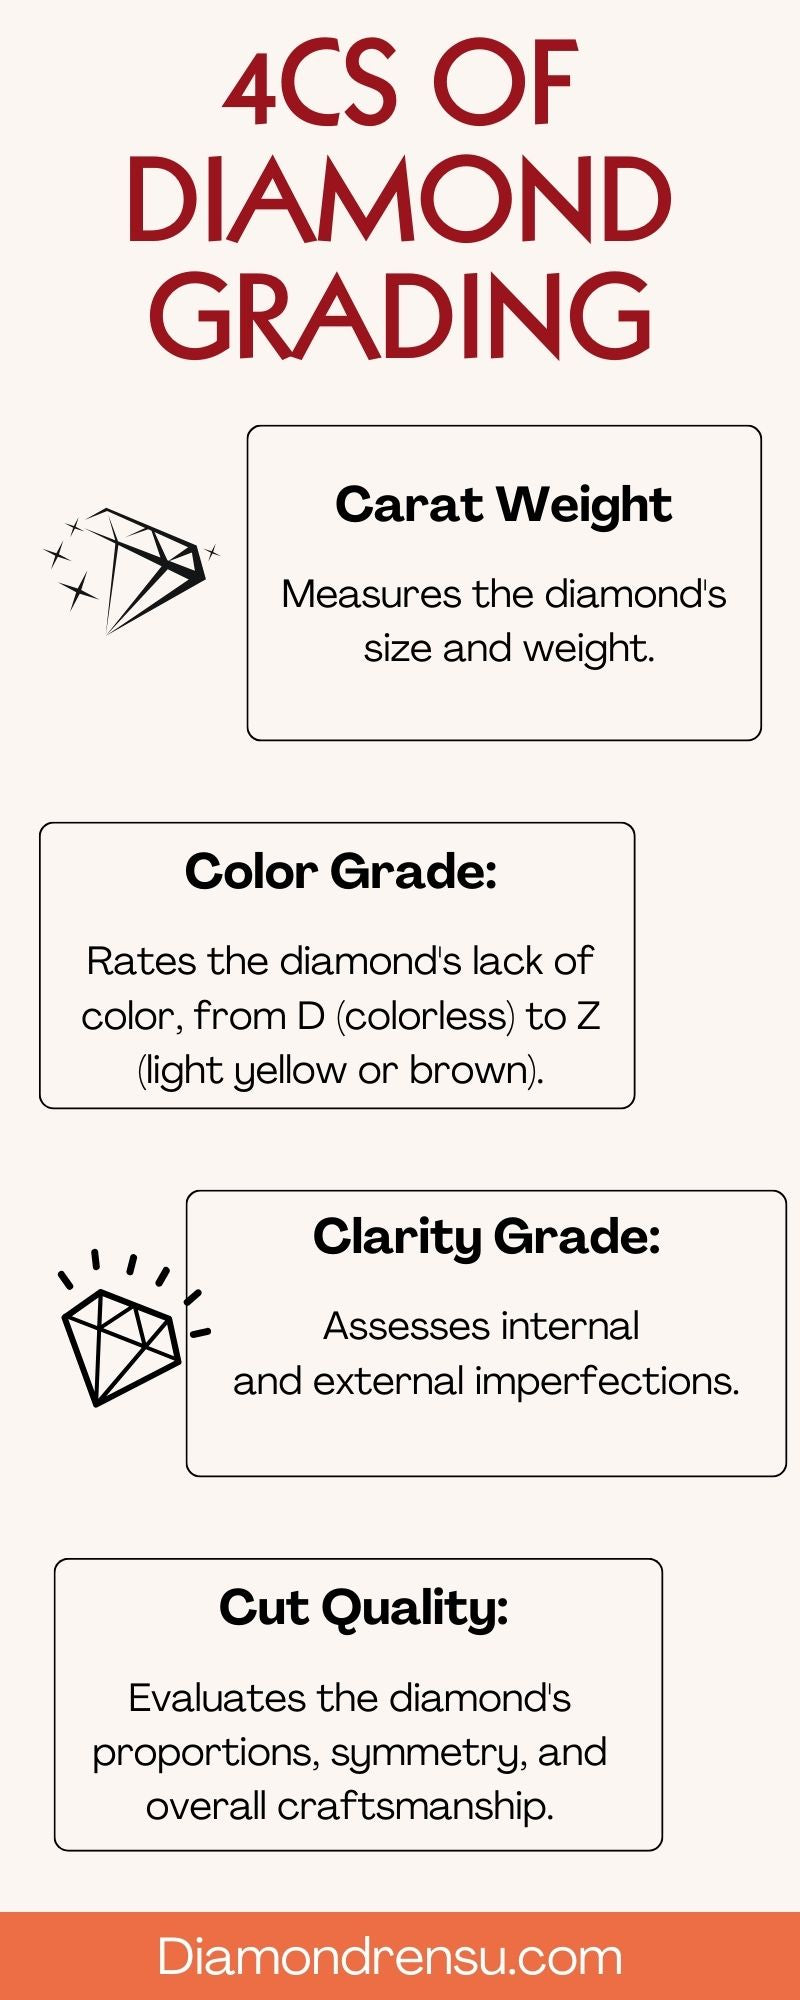 Diamond grading infographic